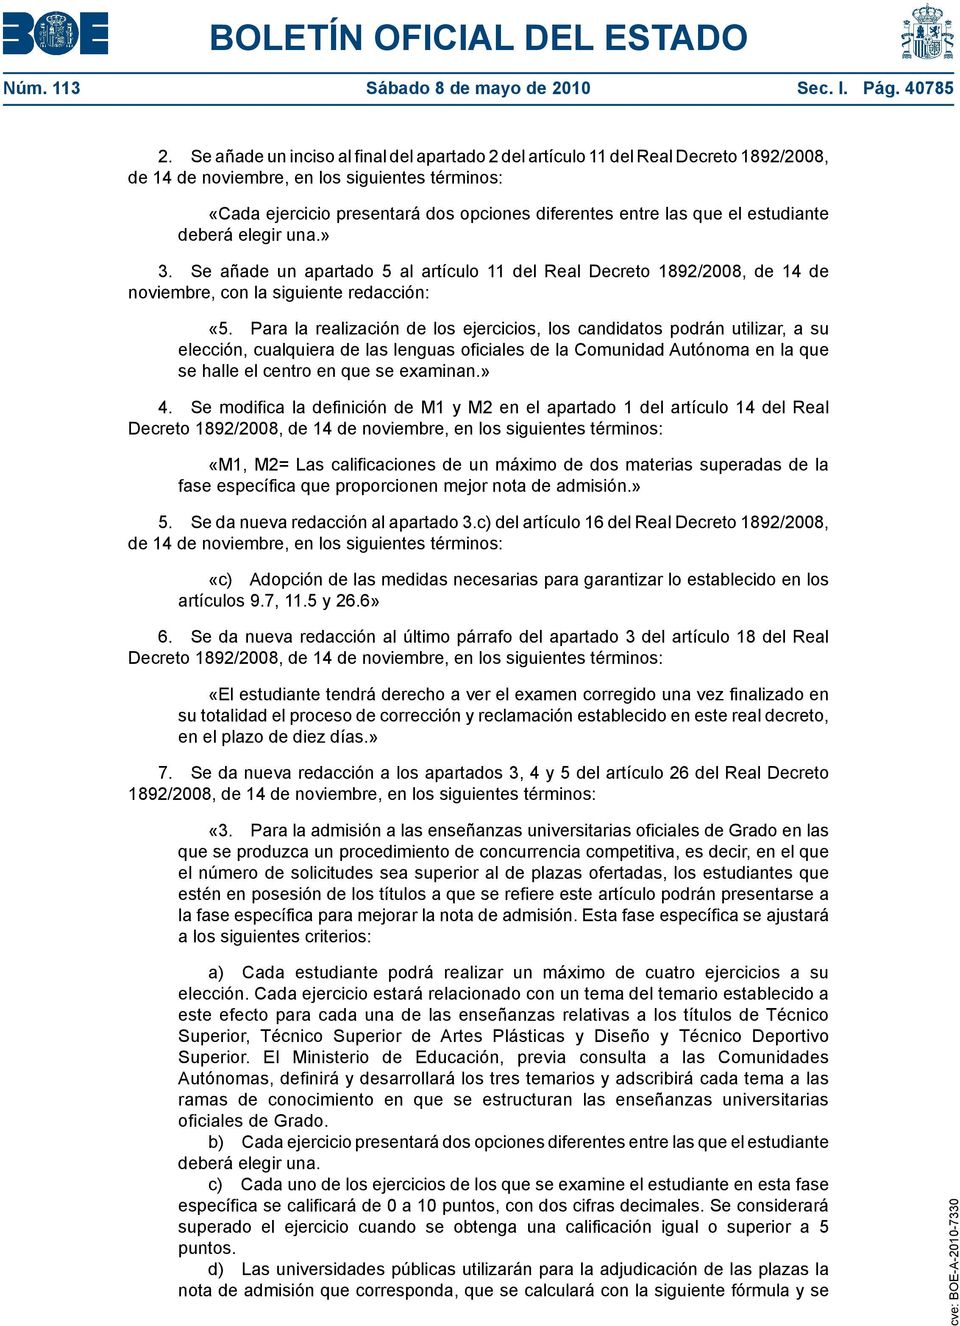 Se añade un apartado 5 al artículo 11 del Real Decreto 1892/2008, de 14 de noviembre, con la siguiente redacción: «5.